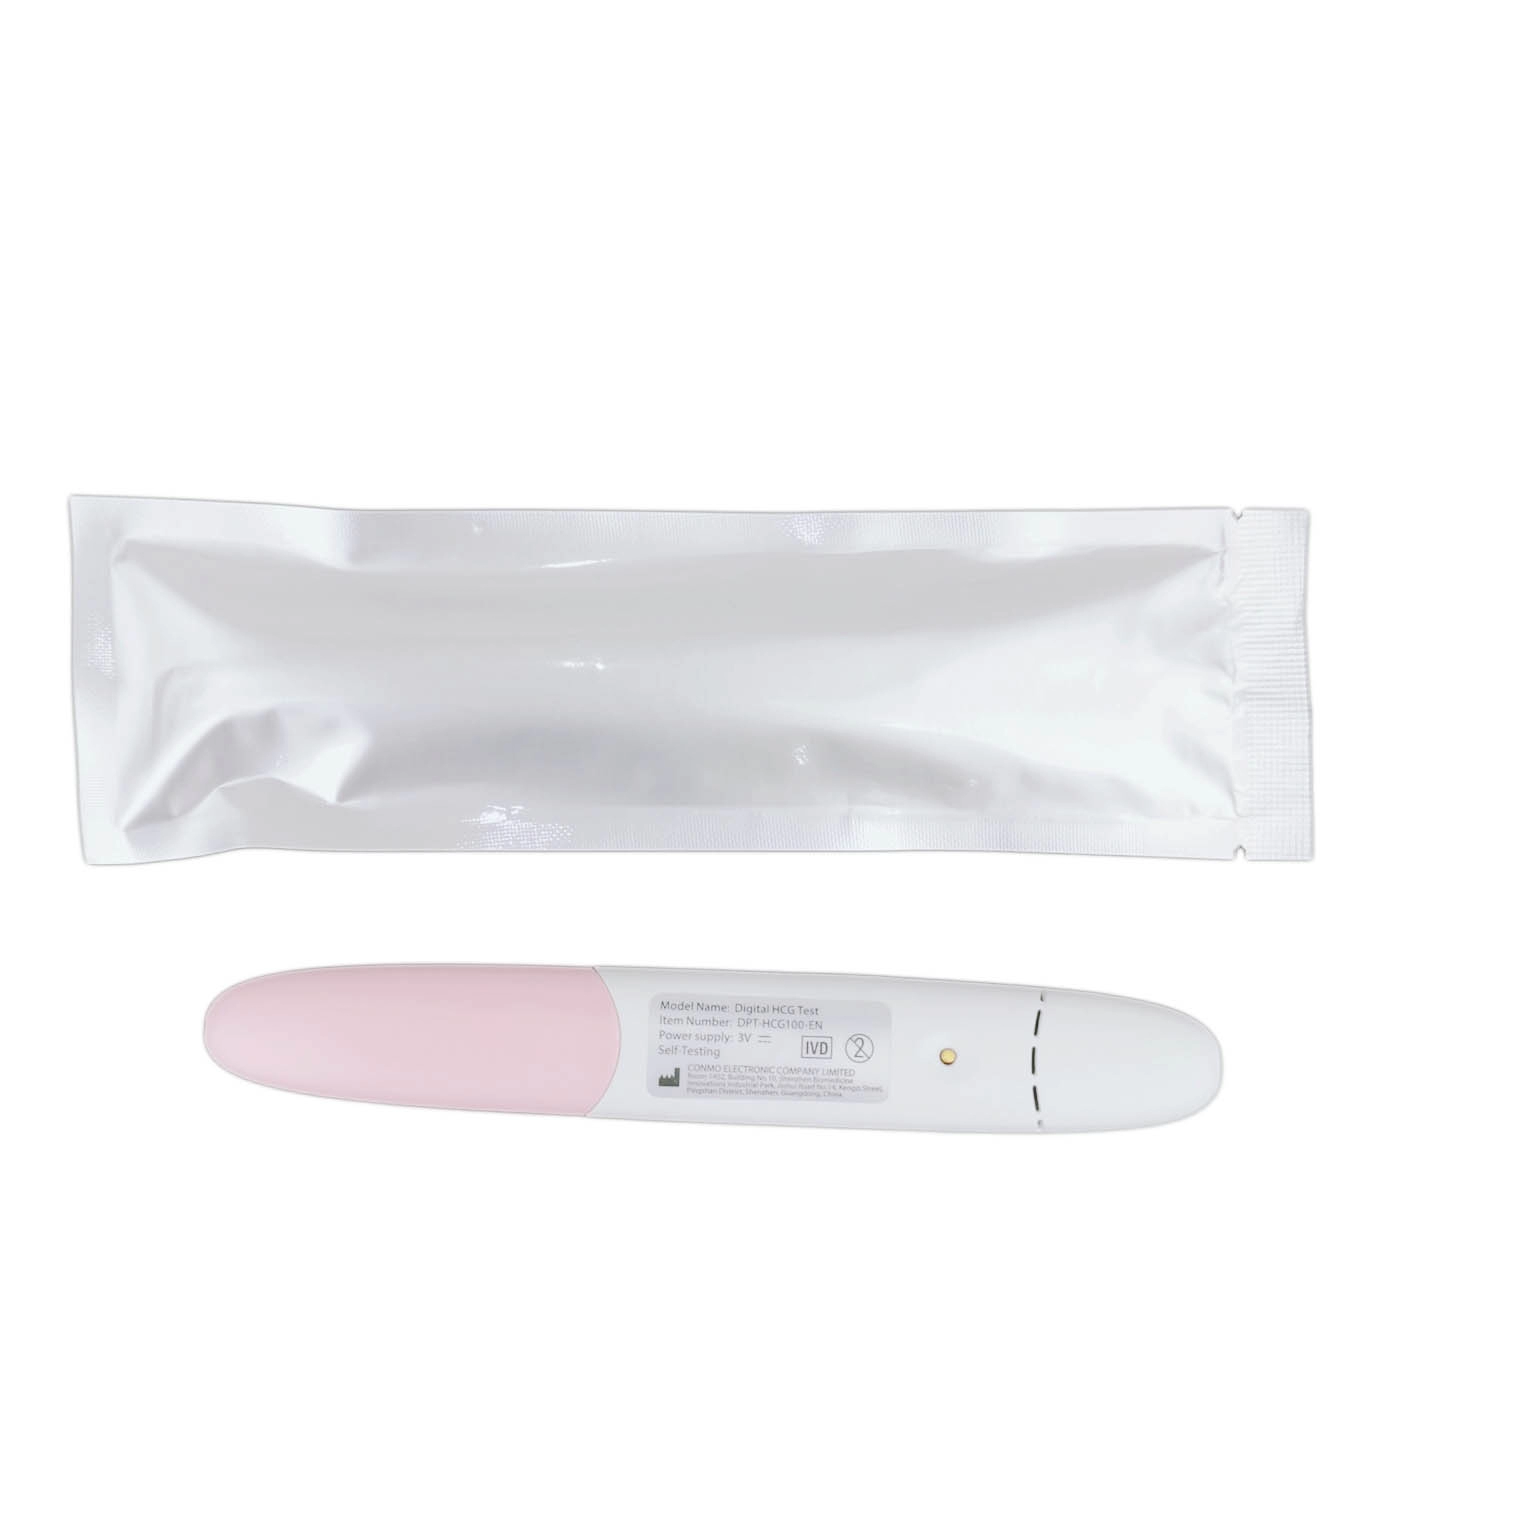 カスタムロゴの電子妊娠検査ペンと家庭での尿妊娠検査